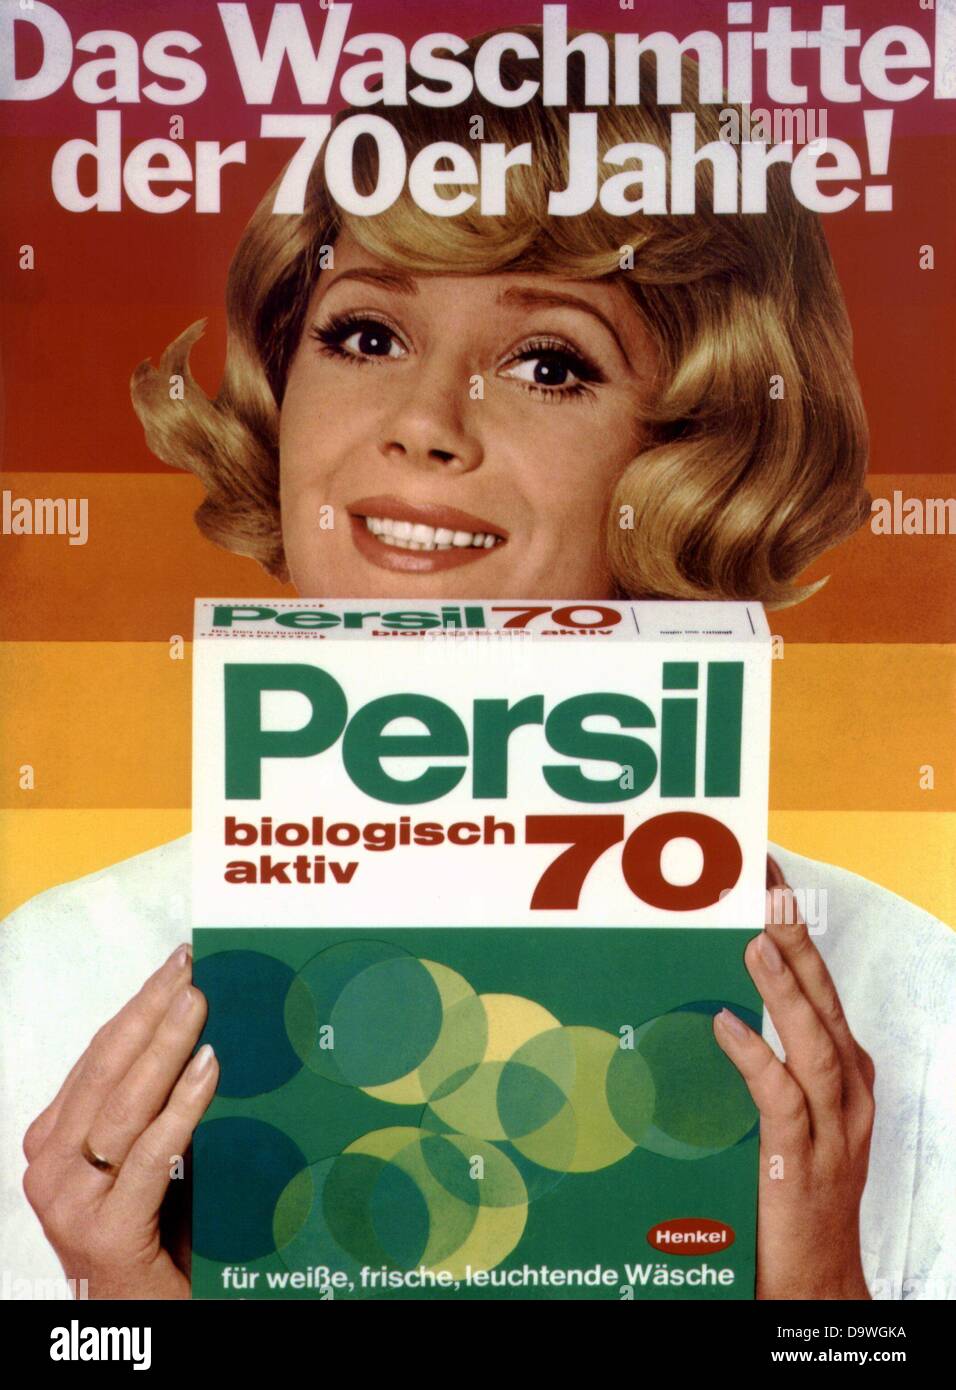 Come Waschmittel der 70er Jahre" (tradotto come "detergente del 70s') è  scritto sul poster della società Henkel per la sua marca Persil detergente  Foto stock - Alamy